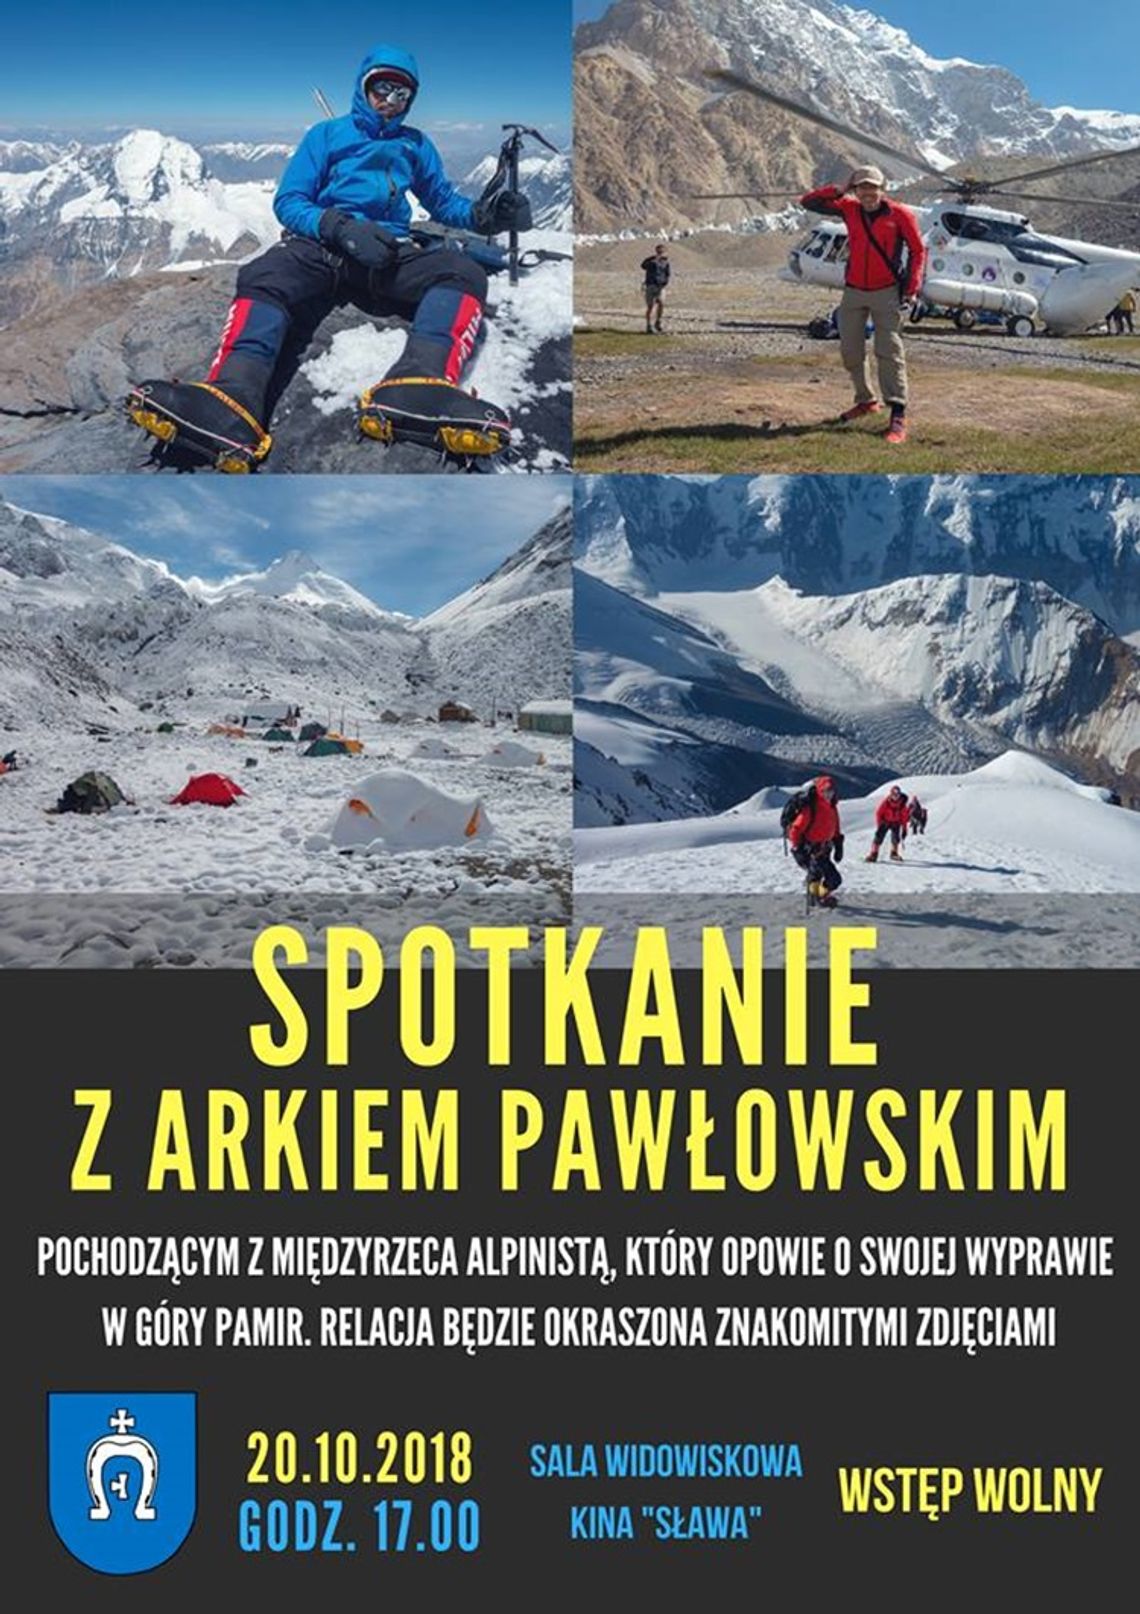 Międzyrzec Podlaski: Alpinista opowie o swojej wyprawie